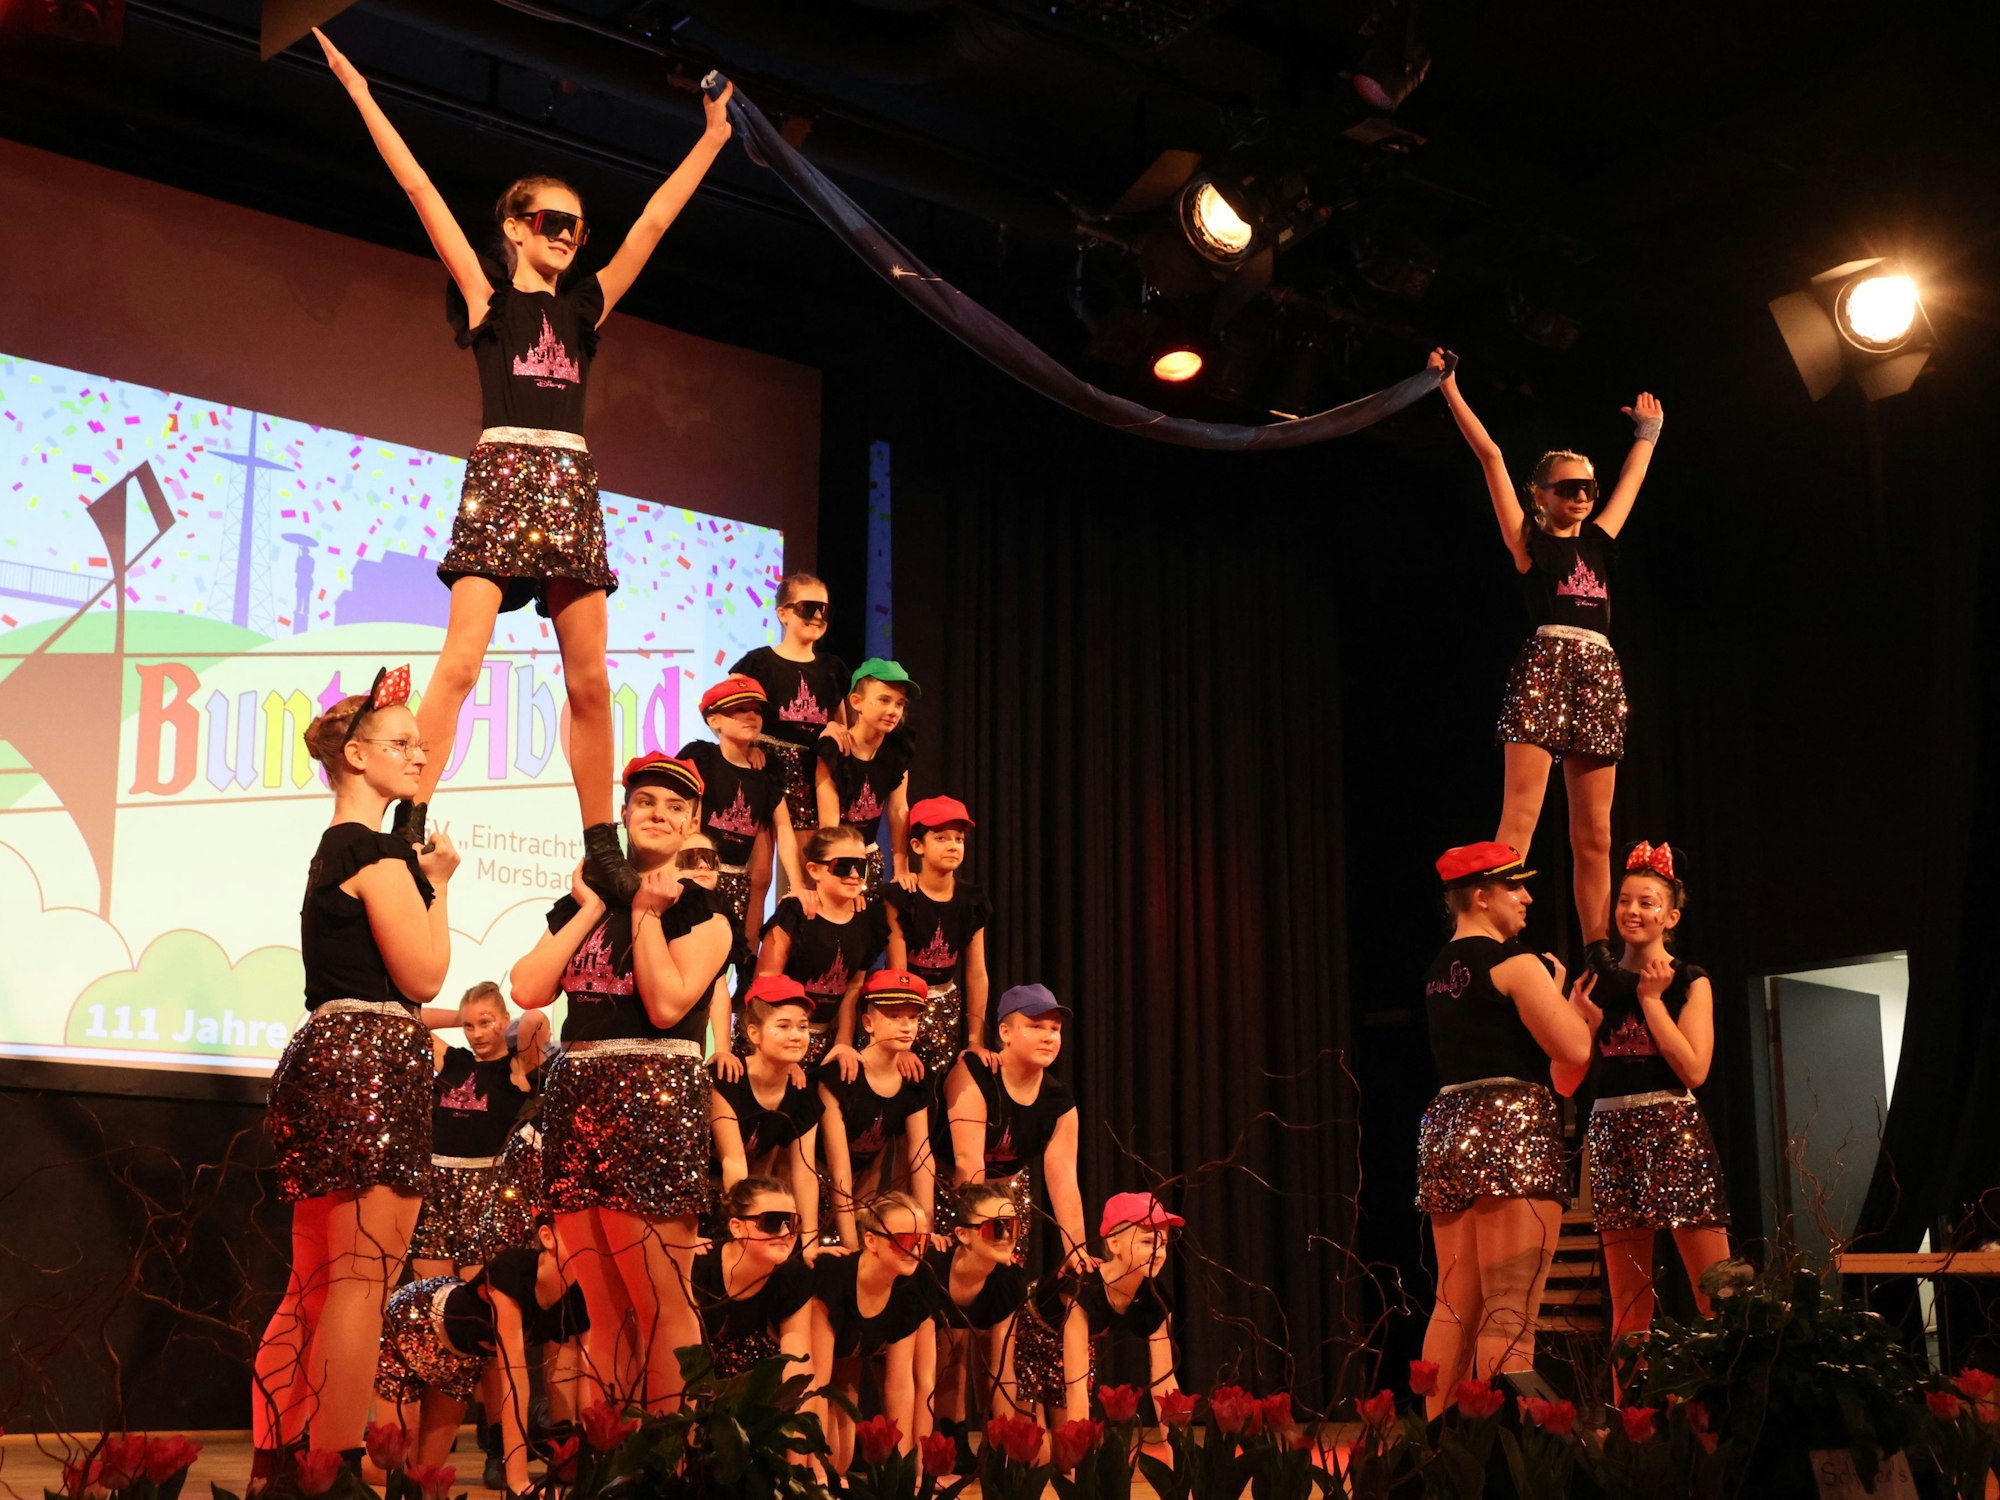 Mehrere Mädchen einer Tanzgruppe bilden bei einem Auftritt auf einer Bühne eine Pyramide.